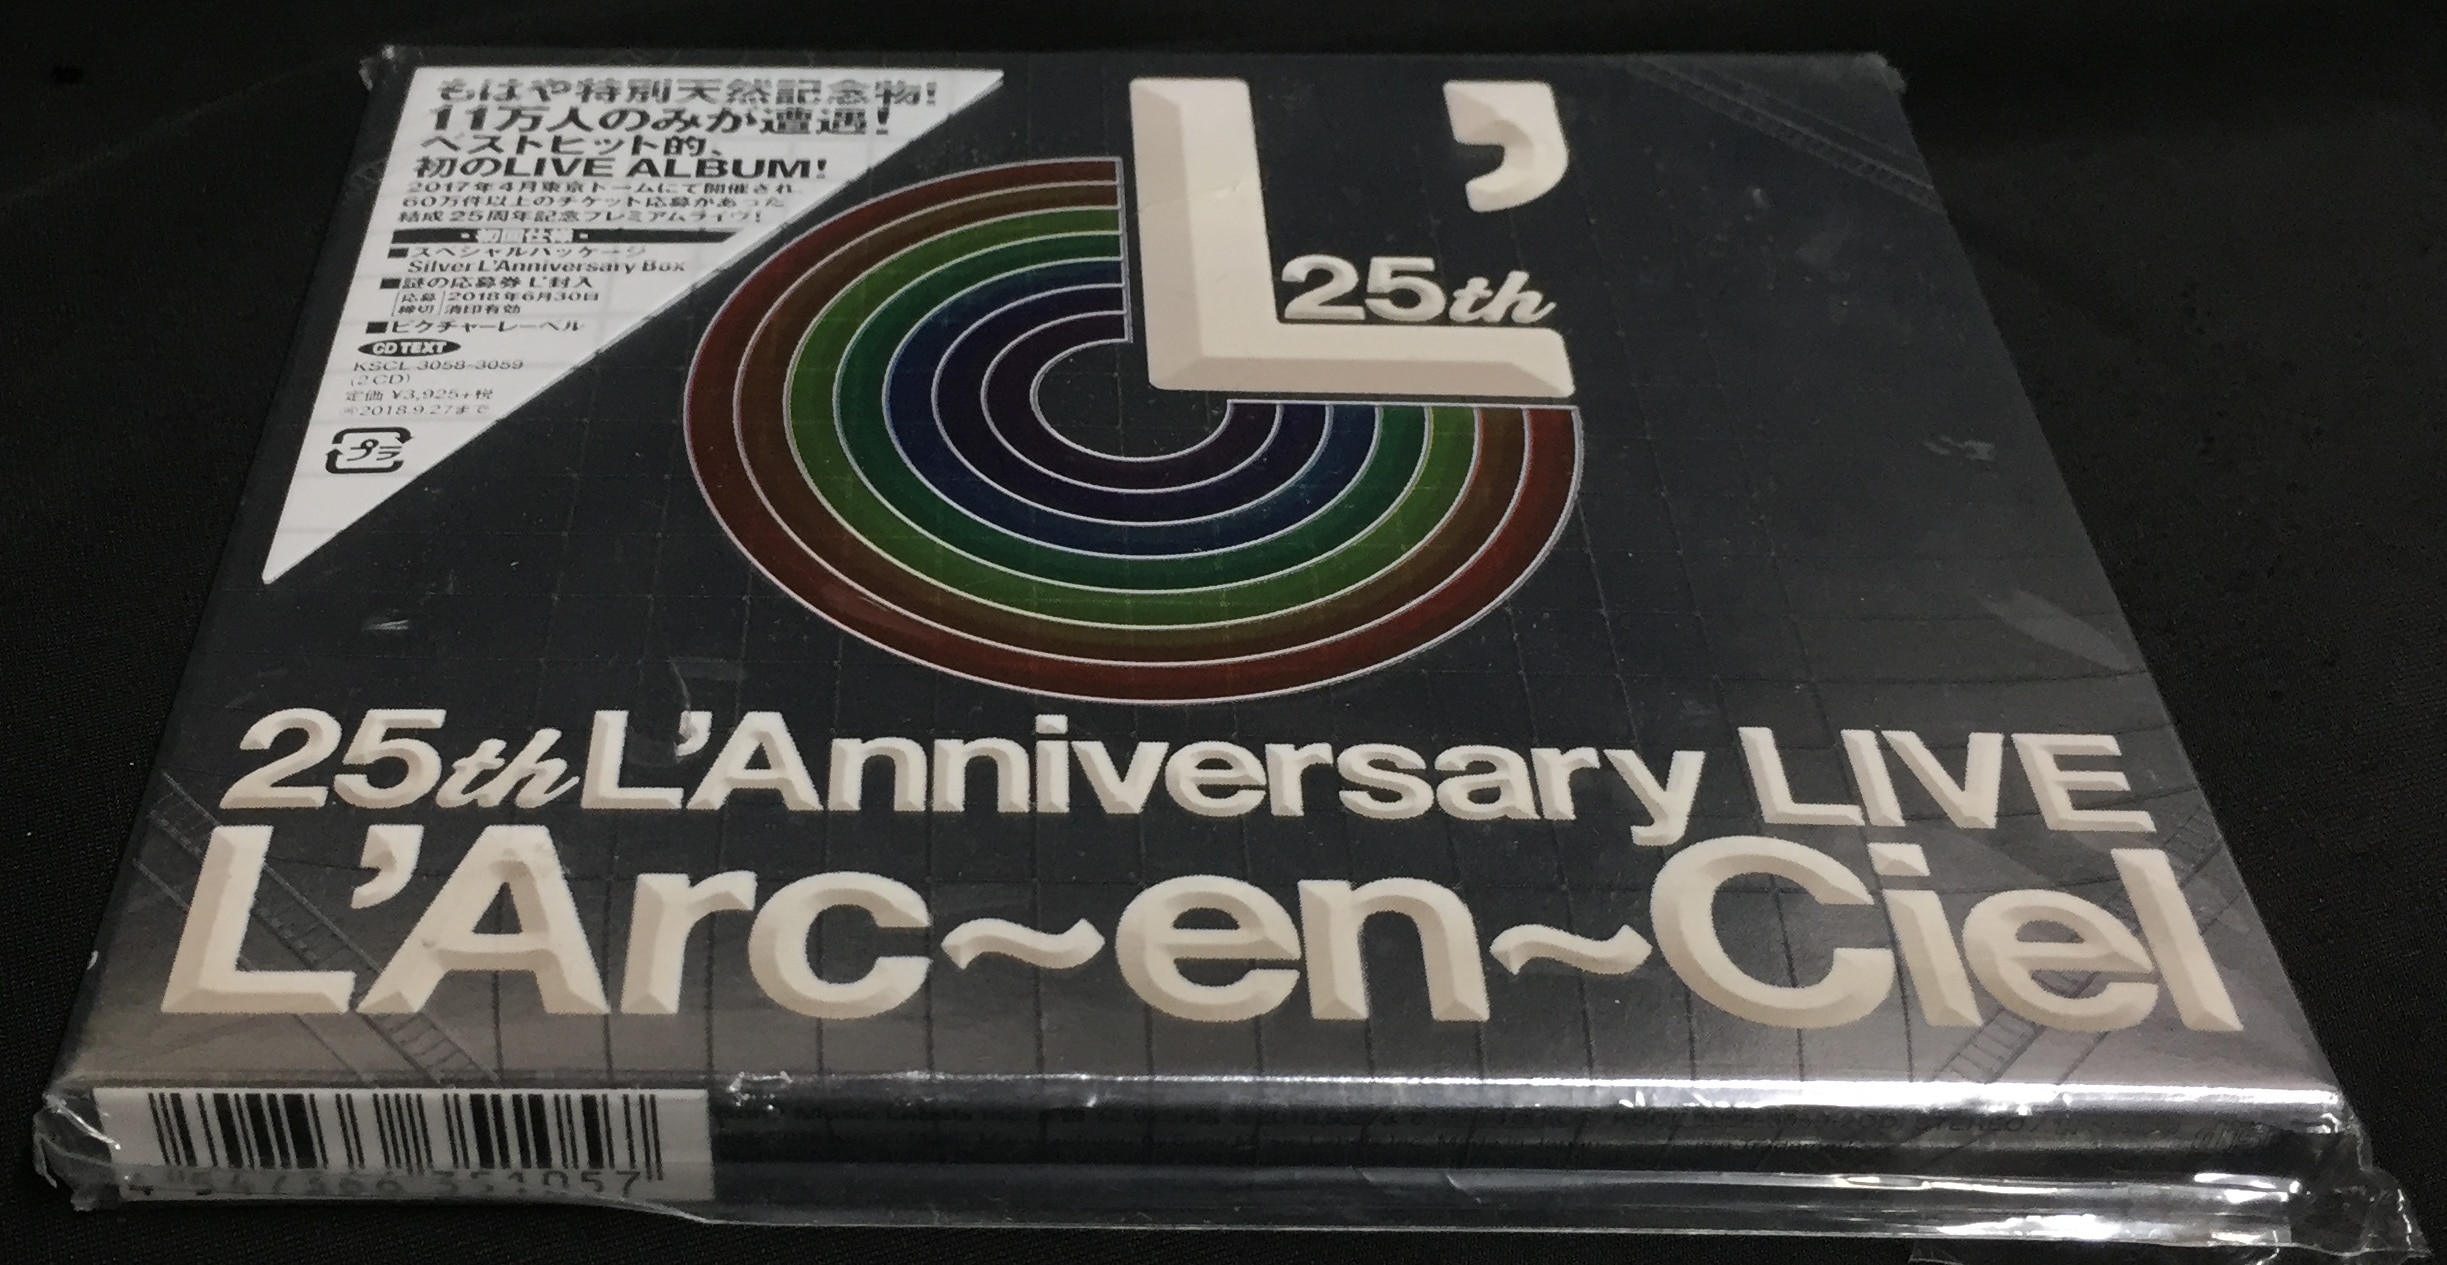 L'Arc～en～Ciel 初回限定仕様(2CD) 25th L'Anniversary LIVE | あり